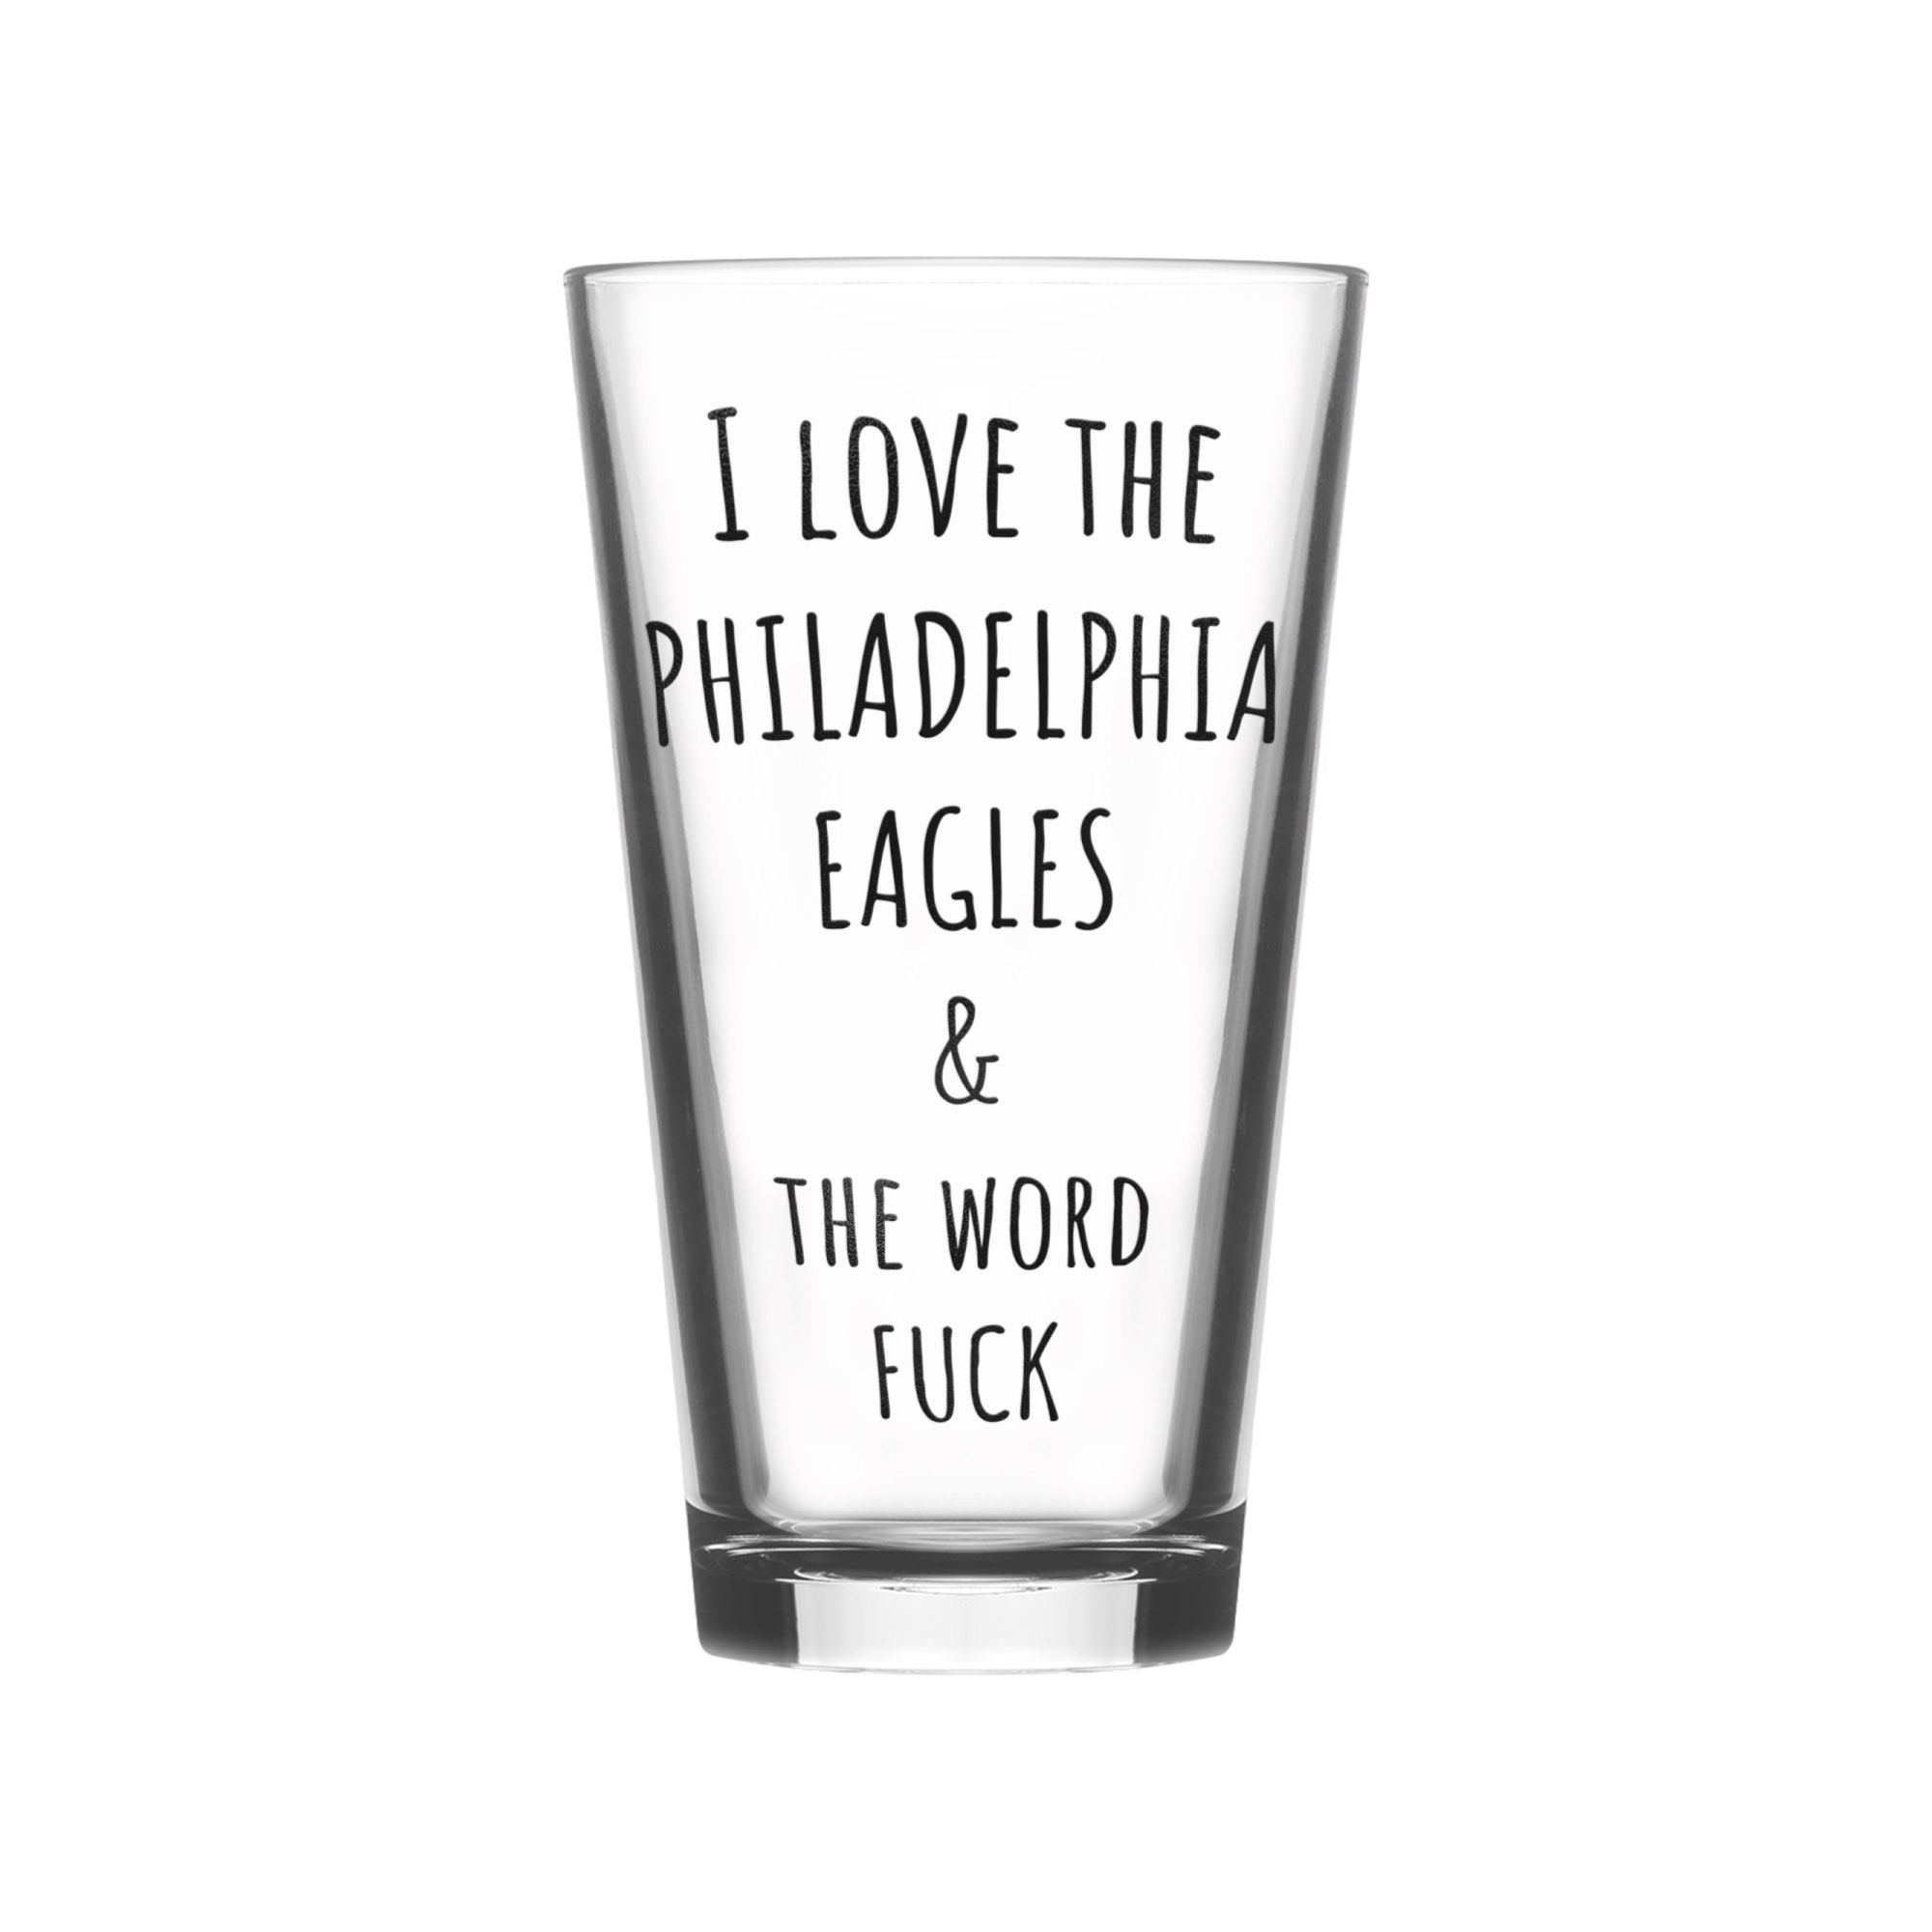 Preços baixos em Philadelphia Eagles Memorabilia usada de jogos da